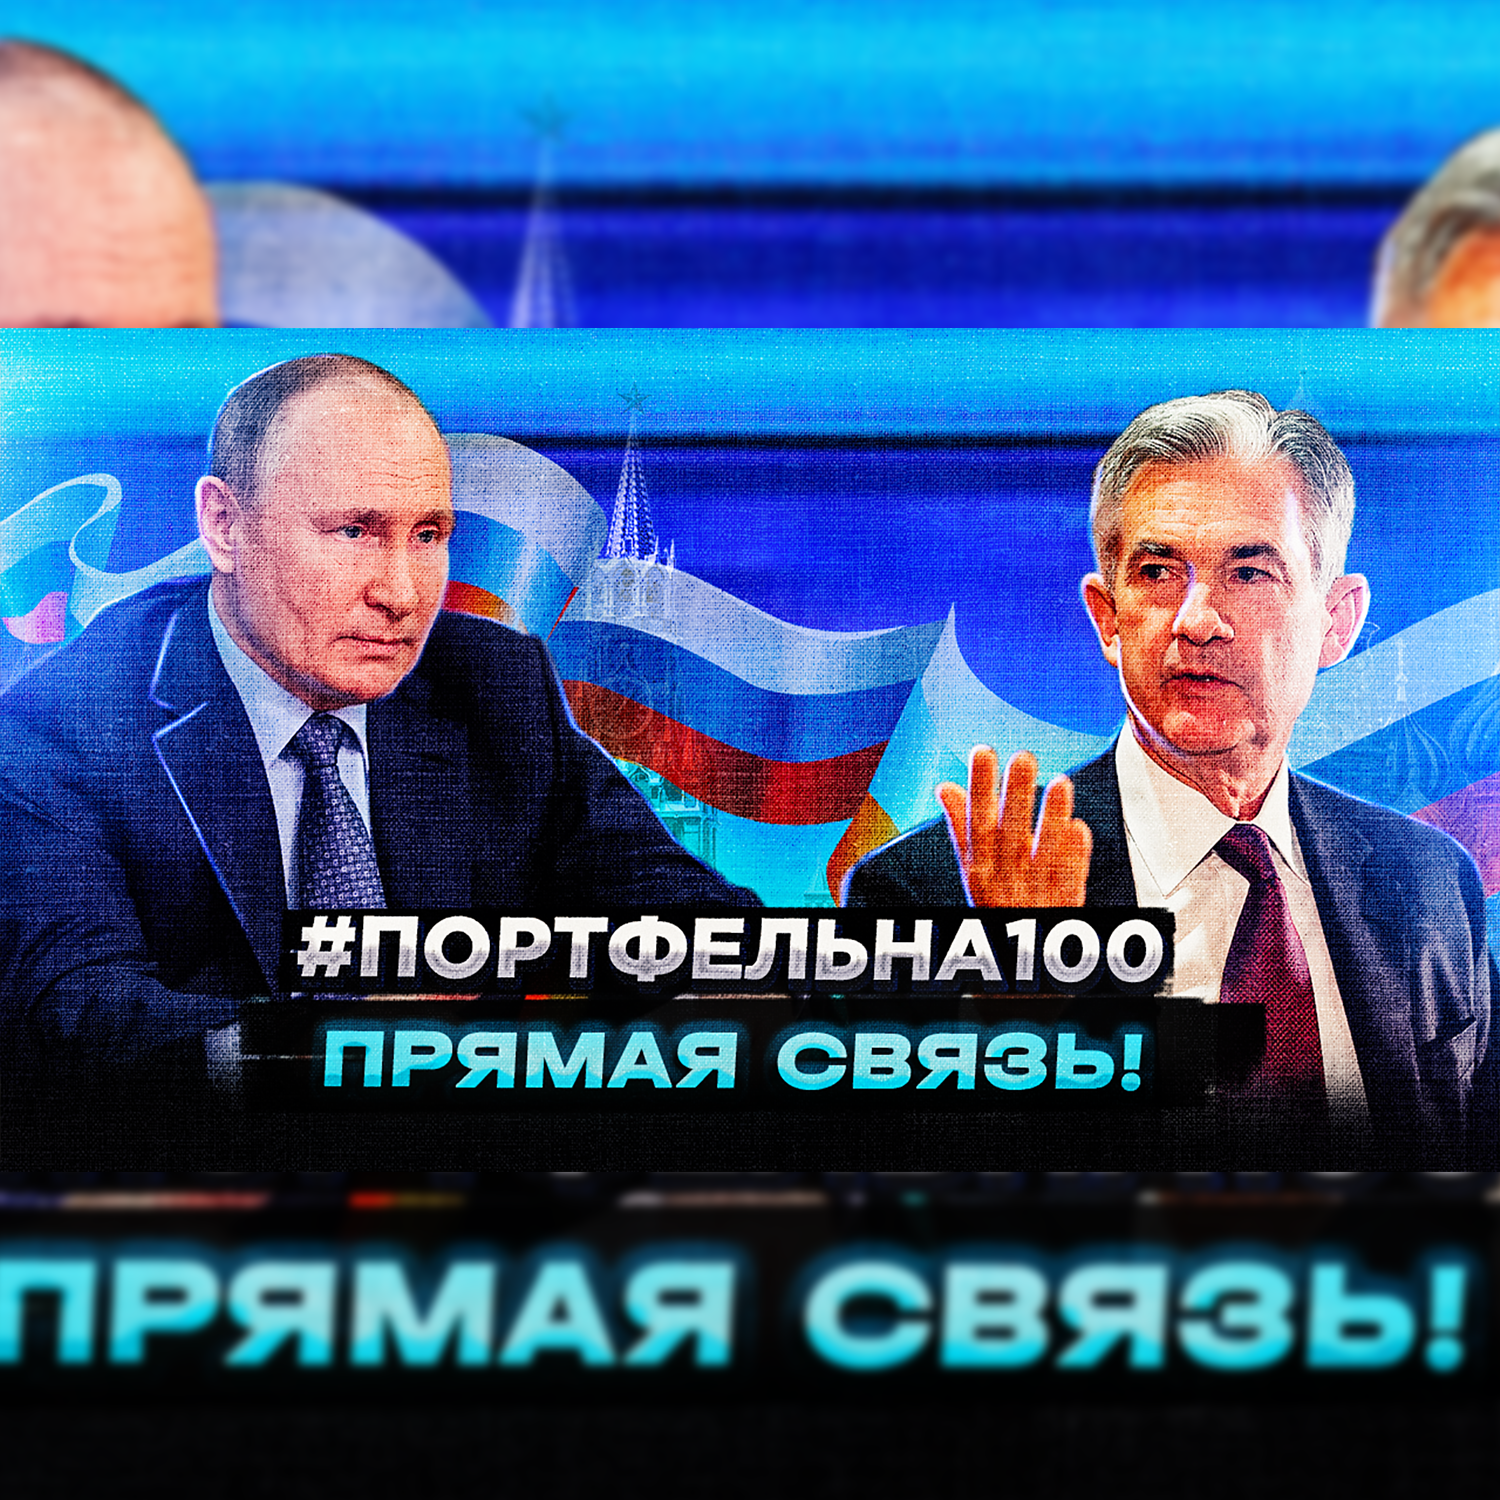 Прямая связь! #Портфельна100 podcast poster